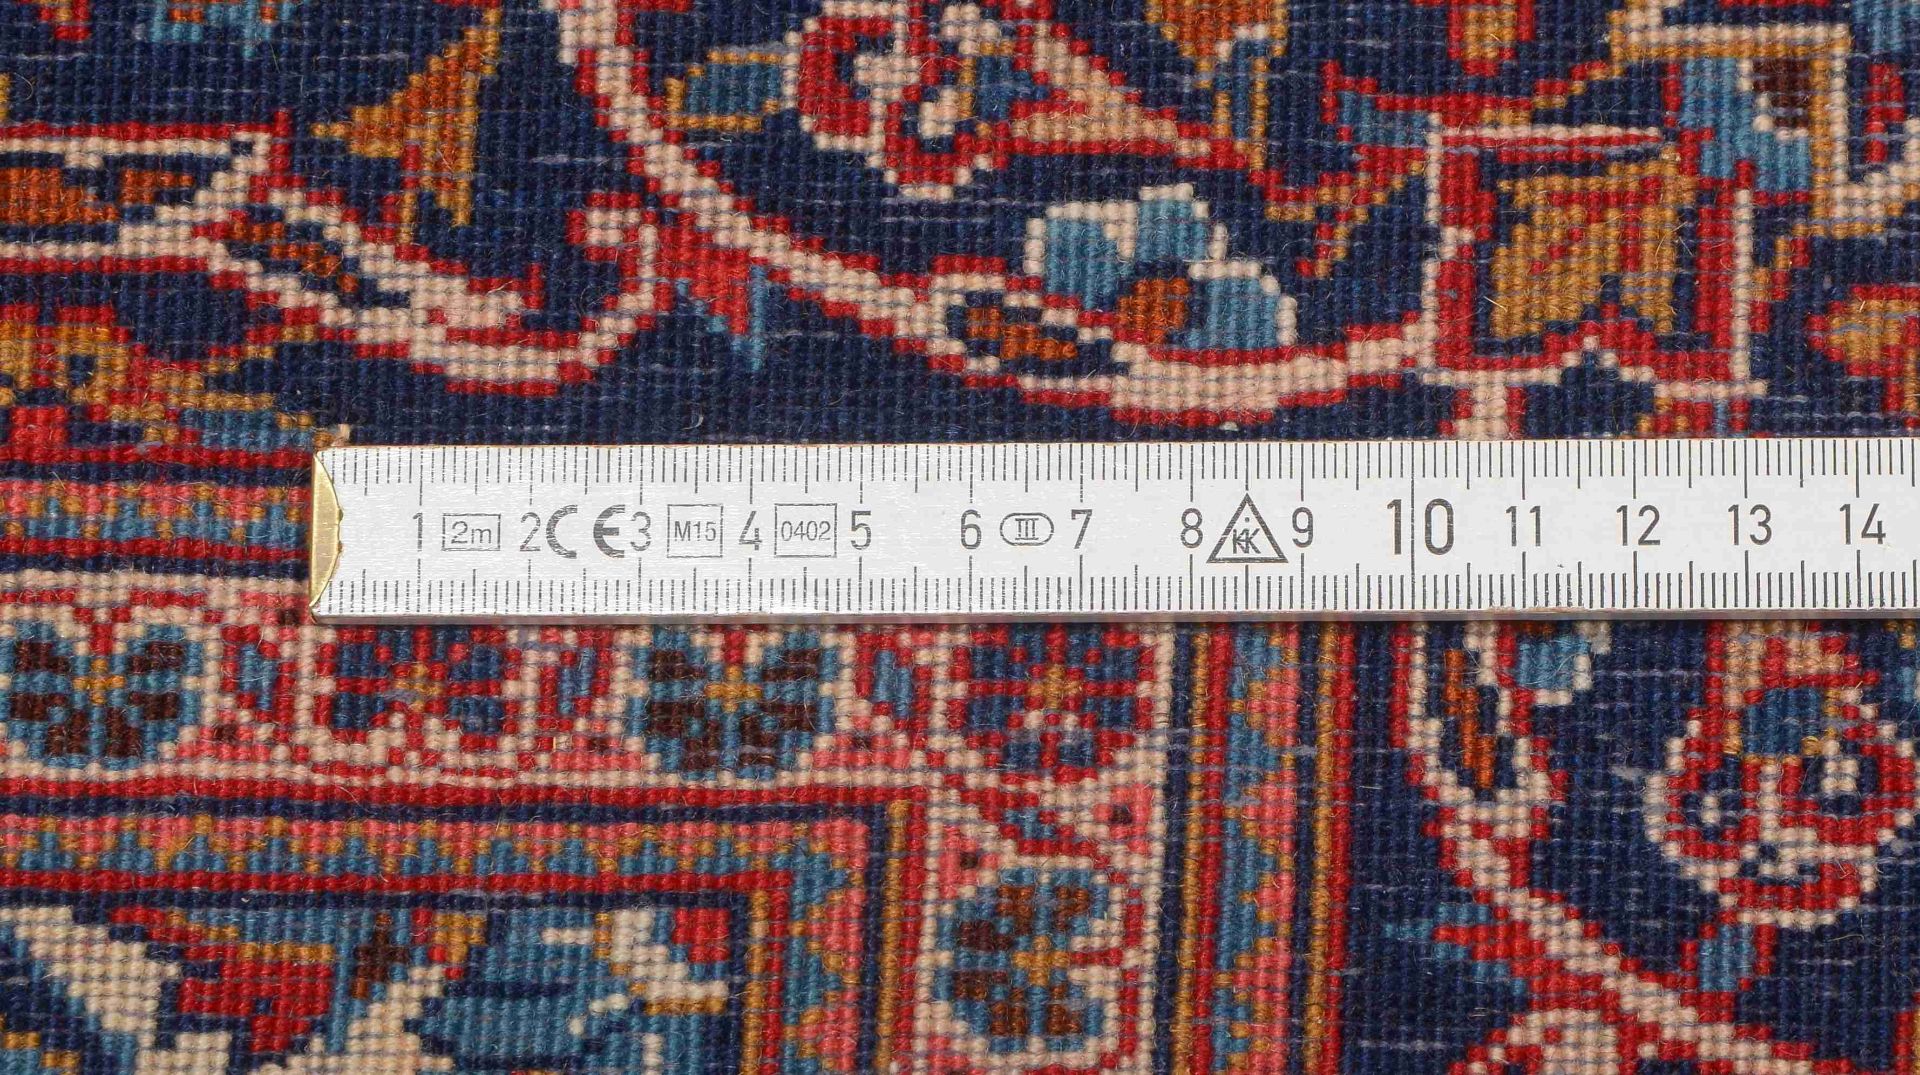 Keshan-Orientteppich, mittelfeine Knüpfung, gleichmäßiger Flor - in gutem Zustand; Maße 206 x 140 cm - Bild 2 aus 2